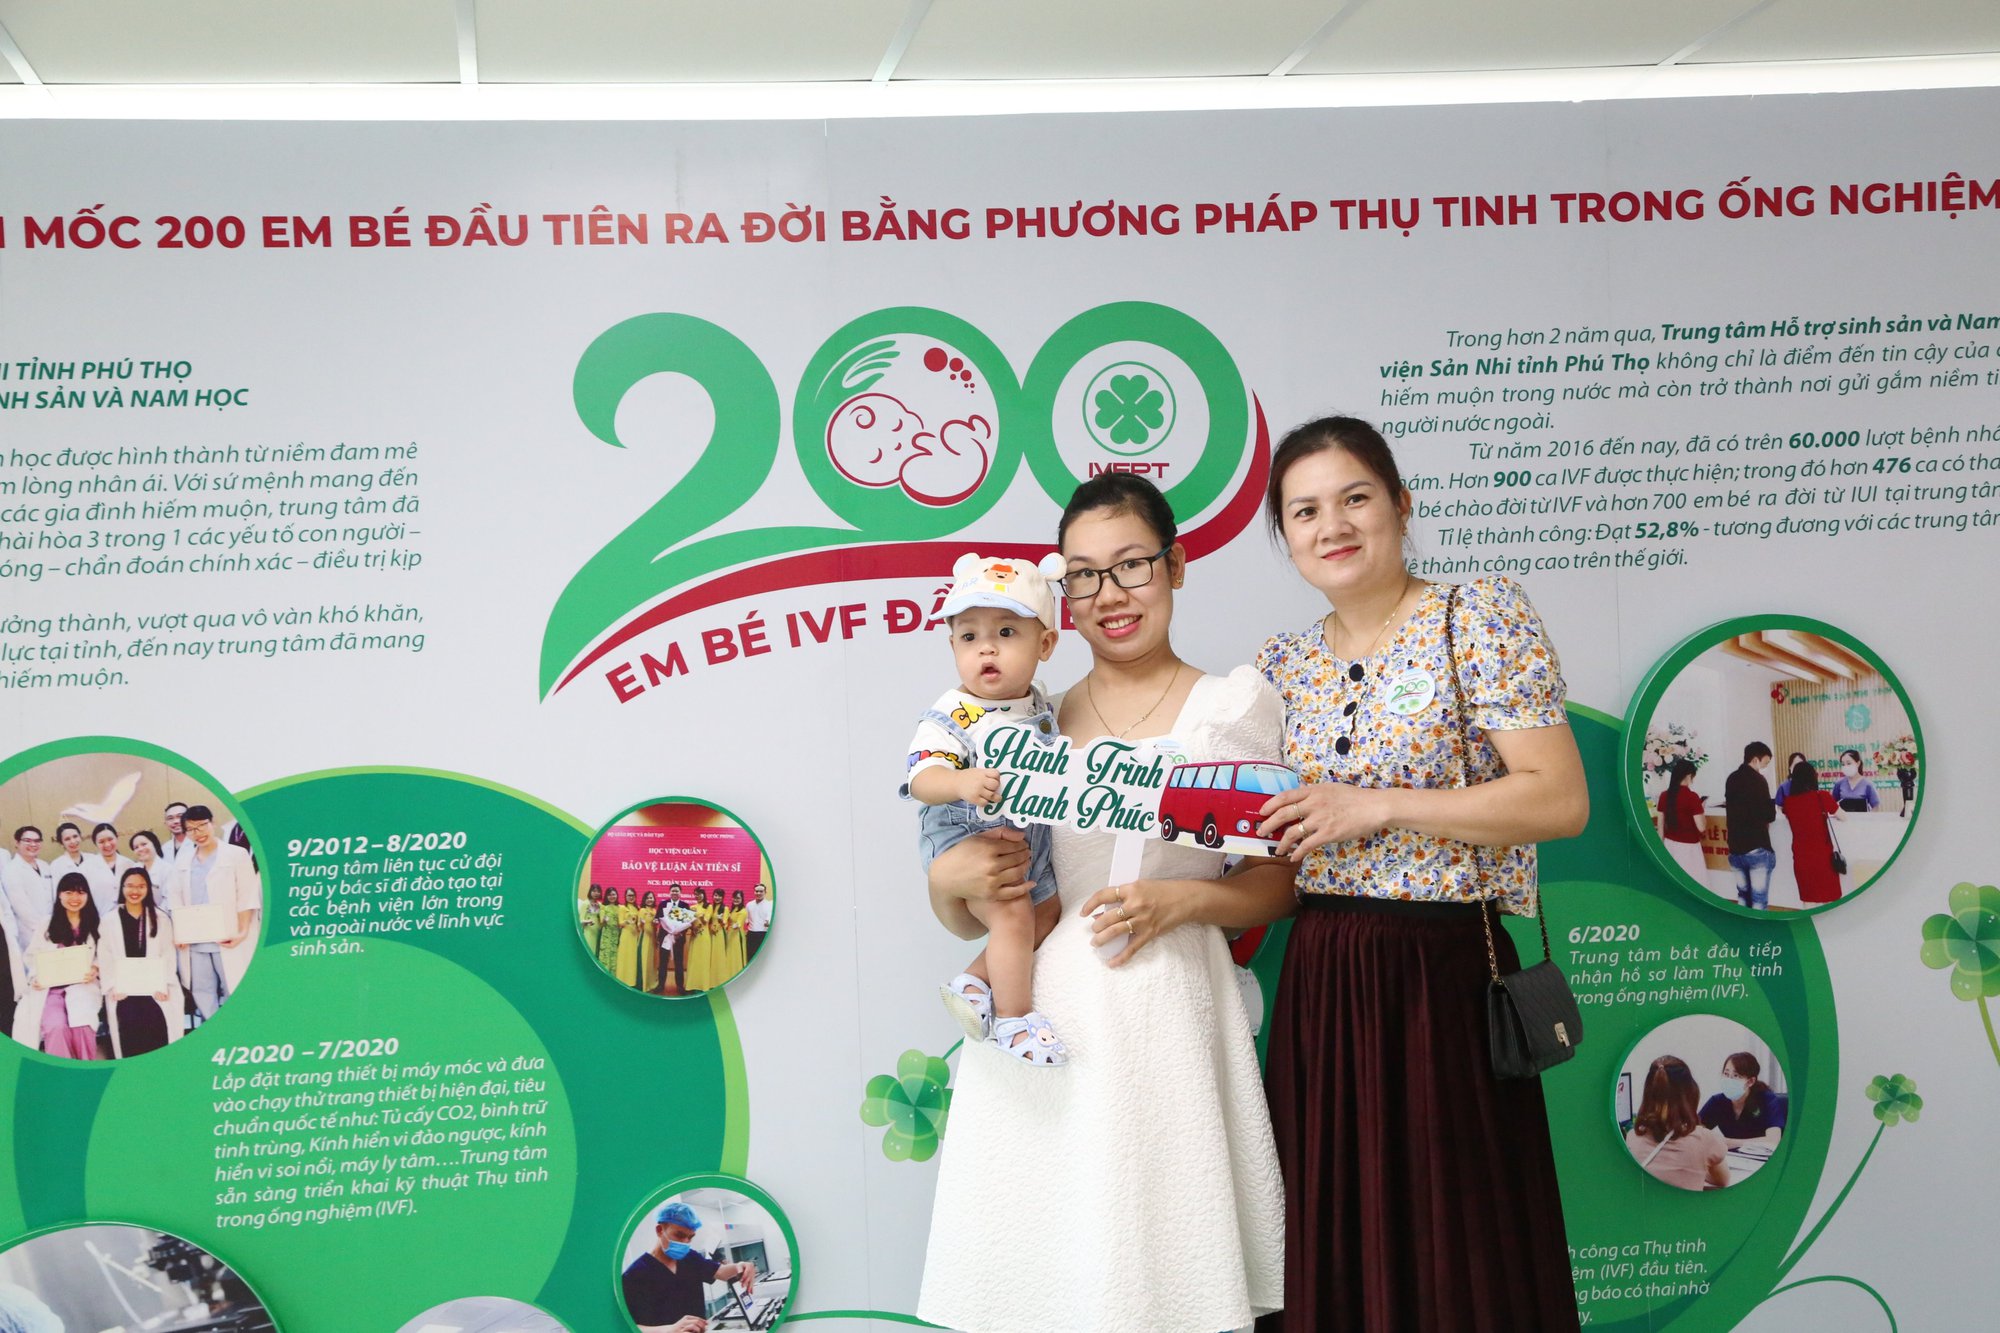 Bệnh viện tuyến tỉnh ở Phú Thọ chào đón 200 em bé ra đời bằng phương pháp IVF - Ảnh 2.